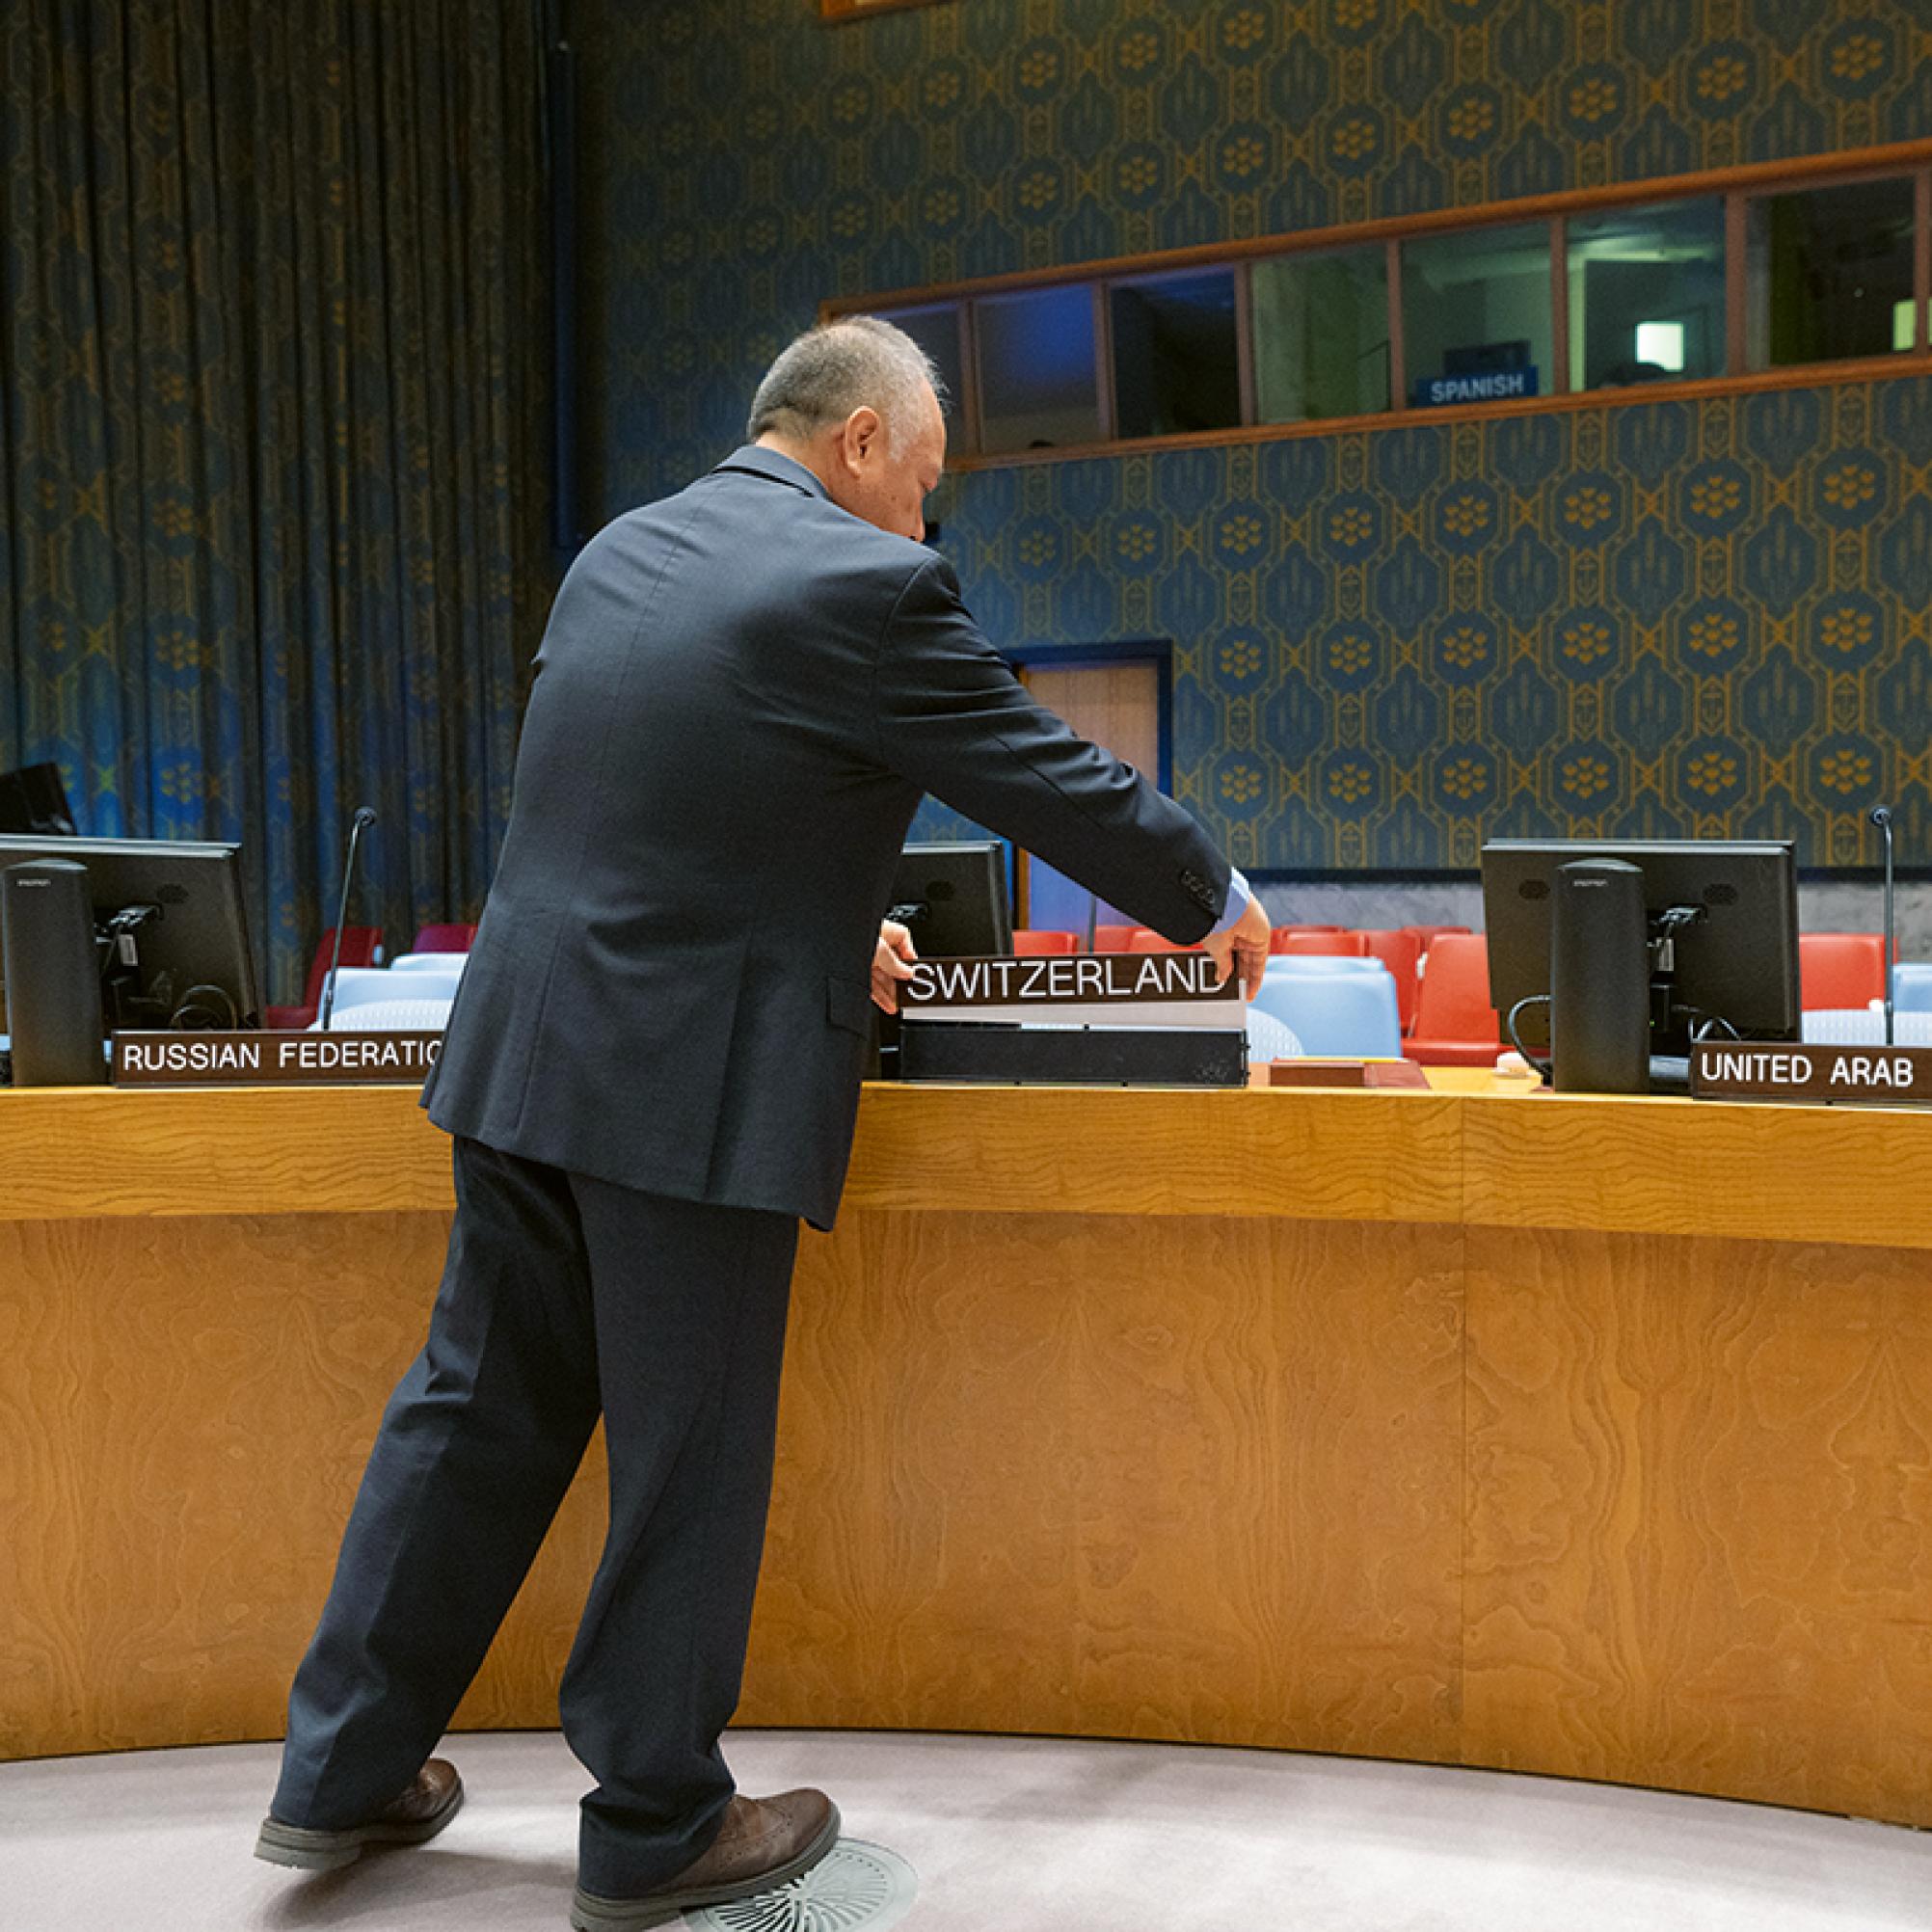 La foto mostra un uomo che prepara il seggio della Svizzera al Consiglio di Sicurezza dell'ONU.